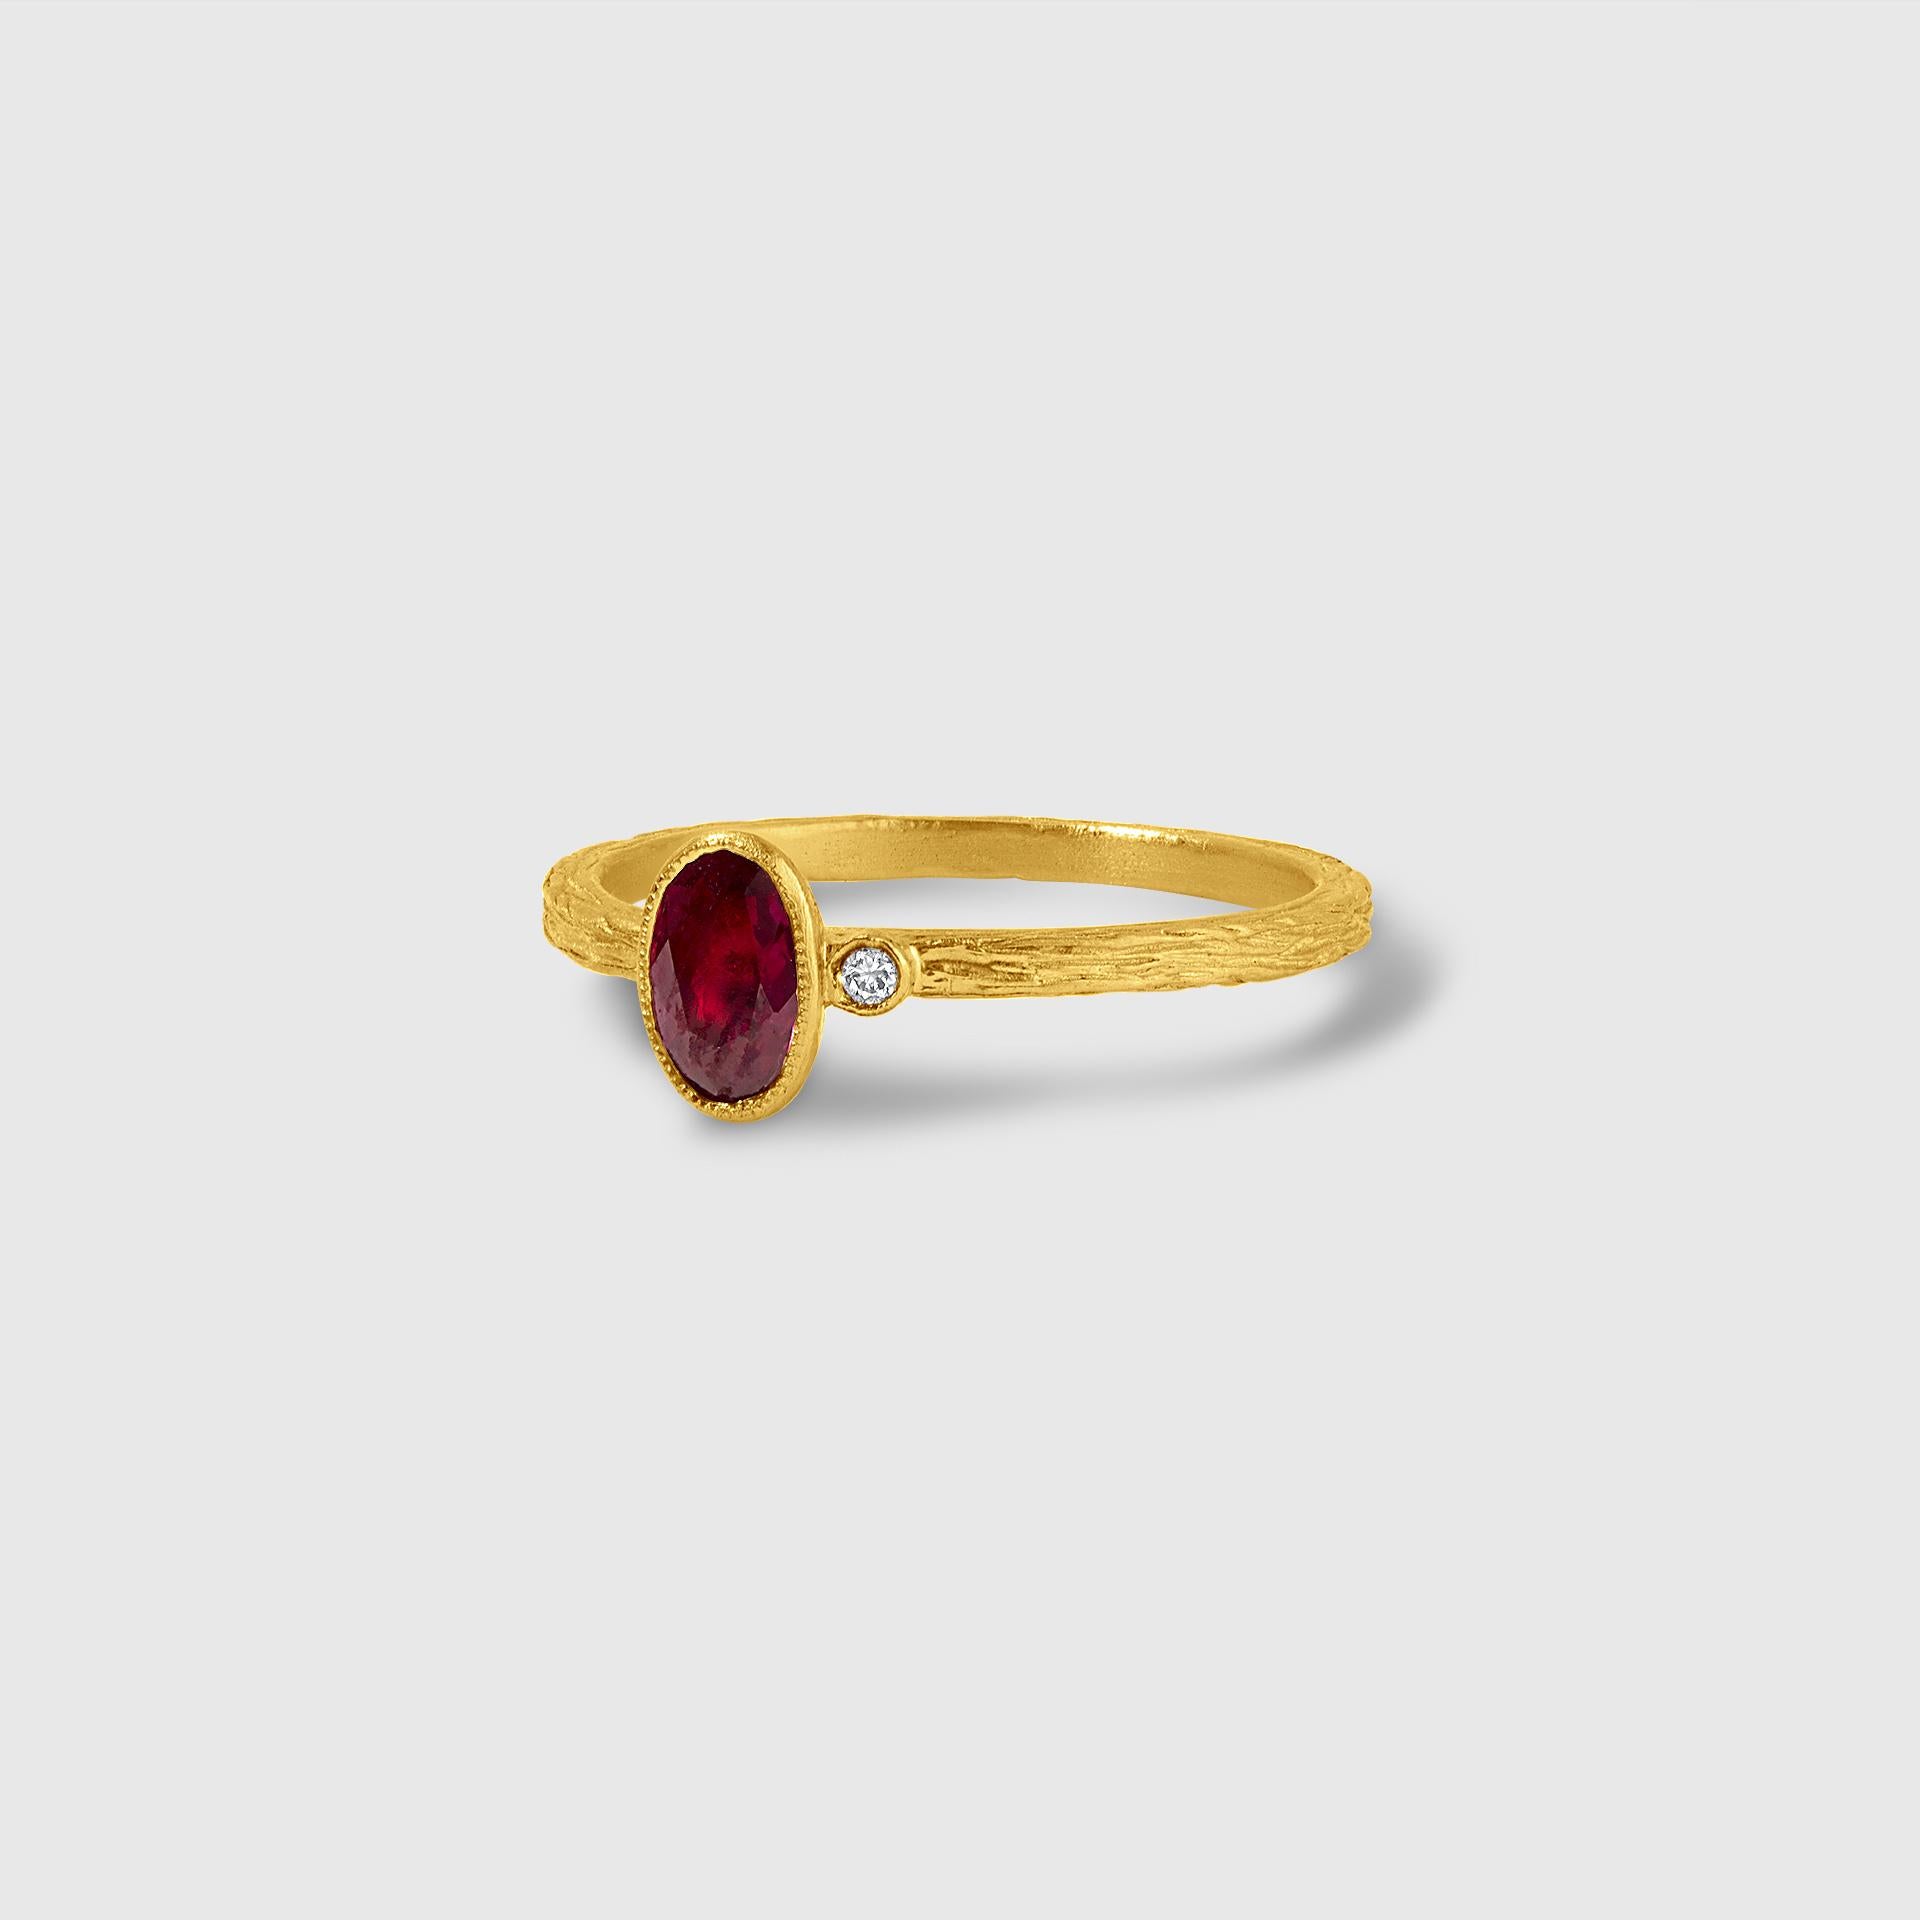 24kt Solid Gold Ring mit dunkelroten Single Ruby Stein von Prehistoric Works of Istanbul, Türkei. Rubin - 0,35ct. Diamant - 0,02cts. Der Ring ist leicht strukturiert und lässt sich gut mit den anderen Ringen in der Galerie stapeln. Größe 6 1/2 US